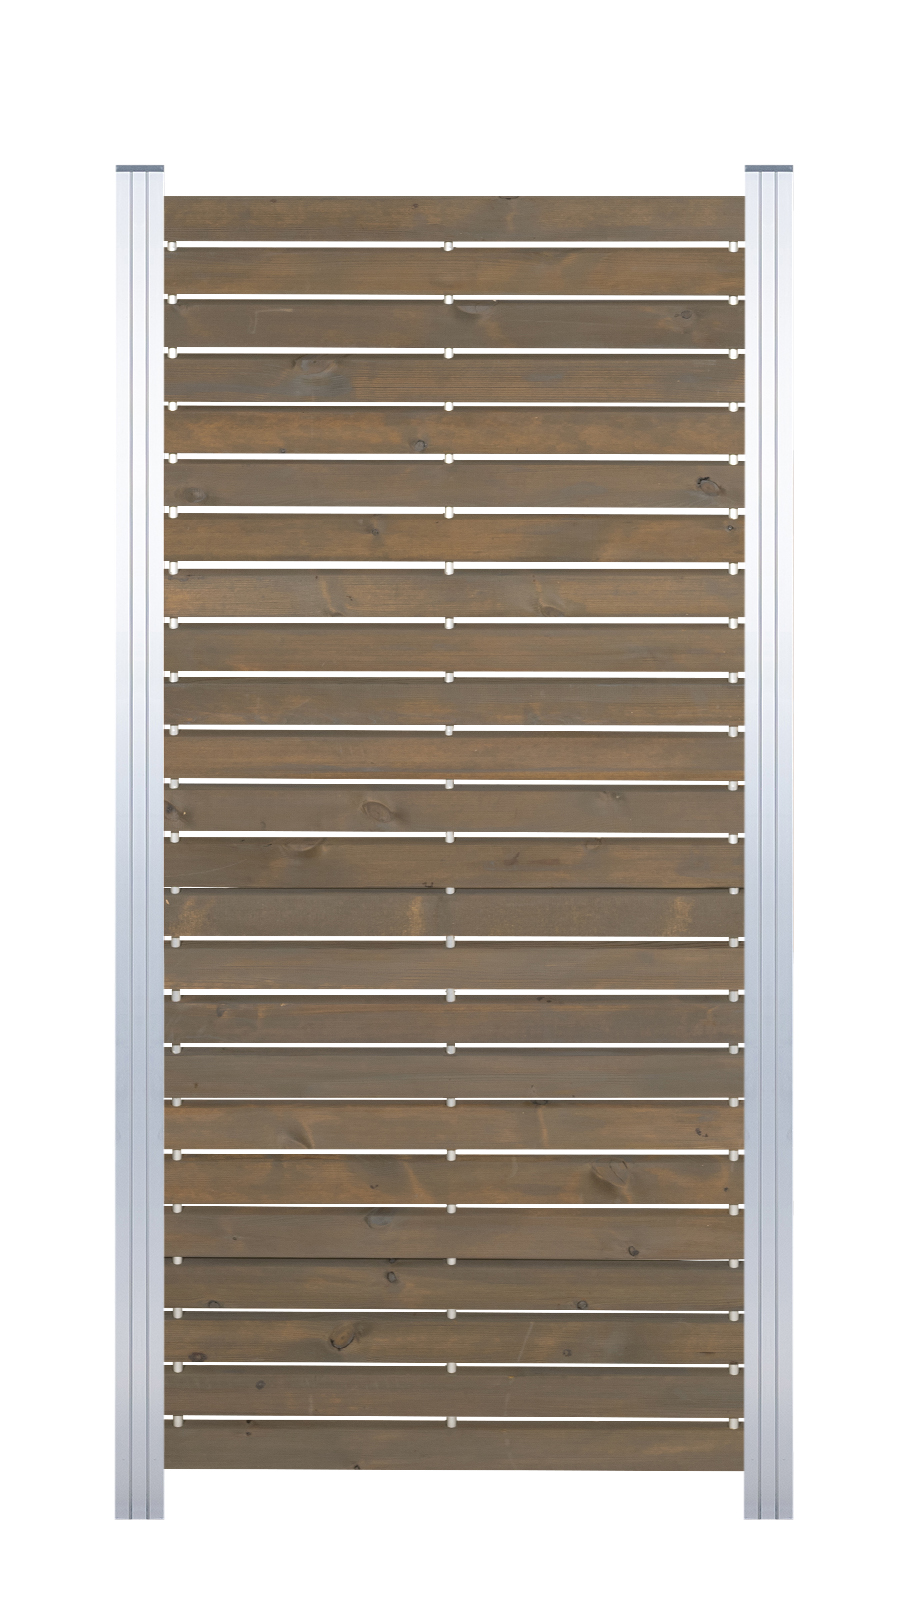 Rhombus-Steckzaun Zwischenelement nordische Kiefer,10 Jahre Farbechtheit ca. 81,5x180 cm Grau/Silber, Farbbehandelt  